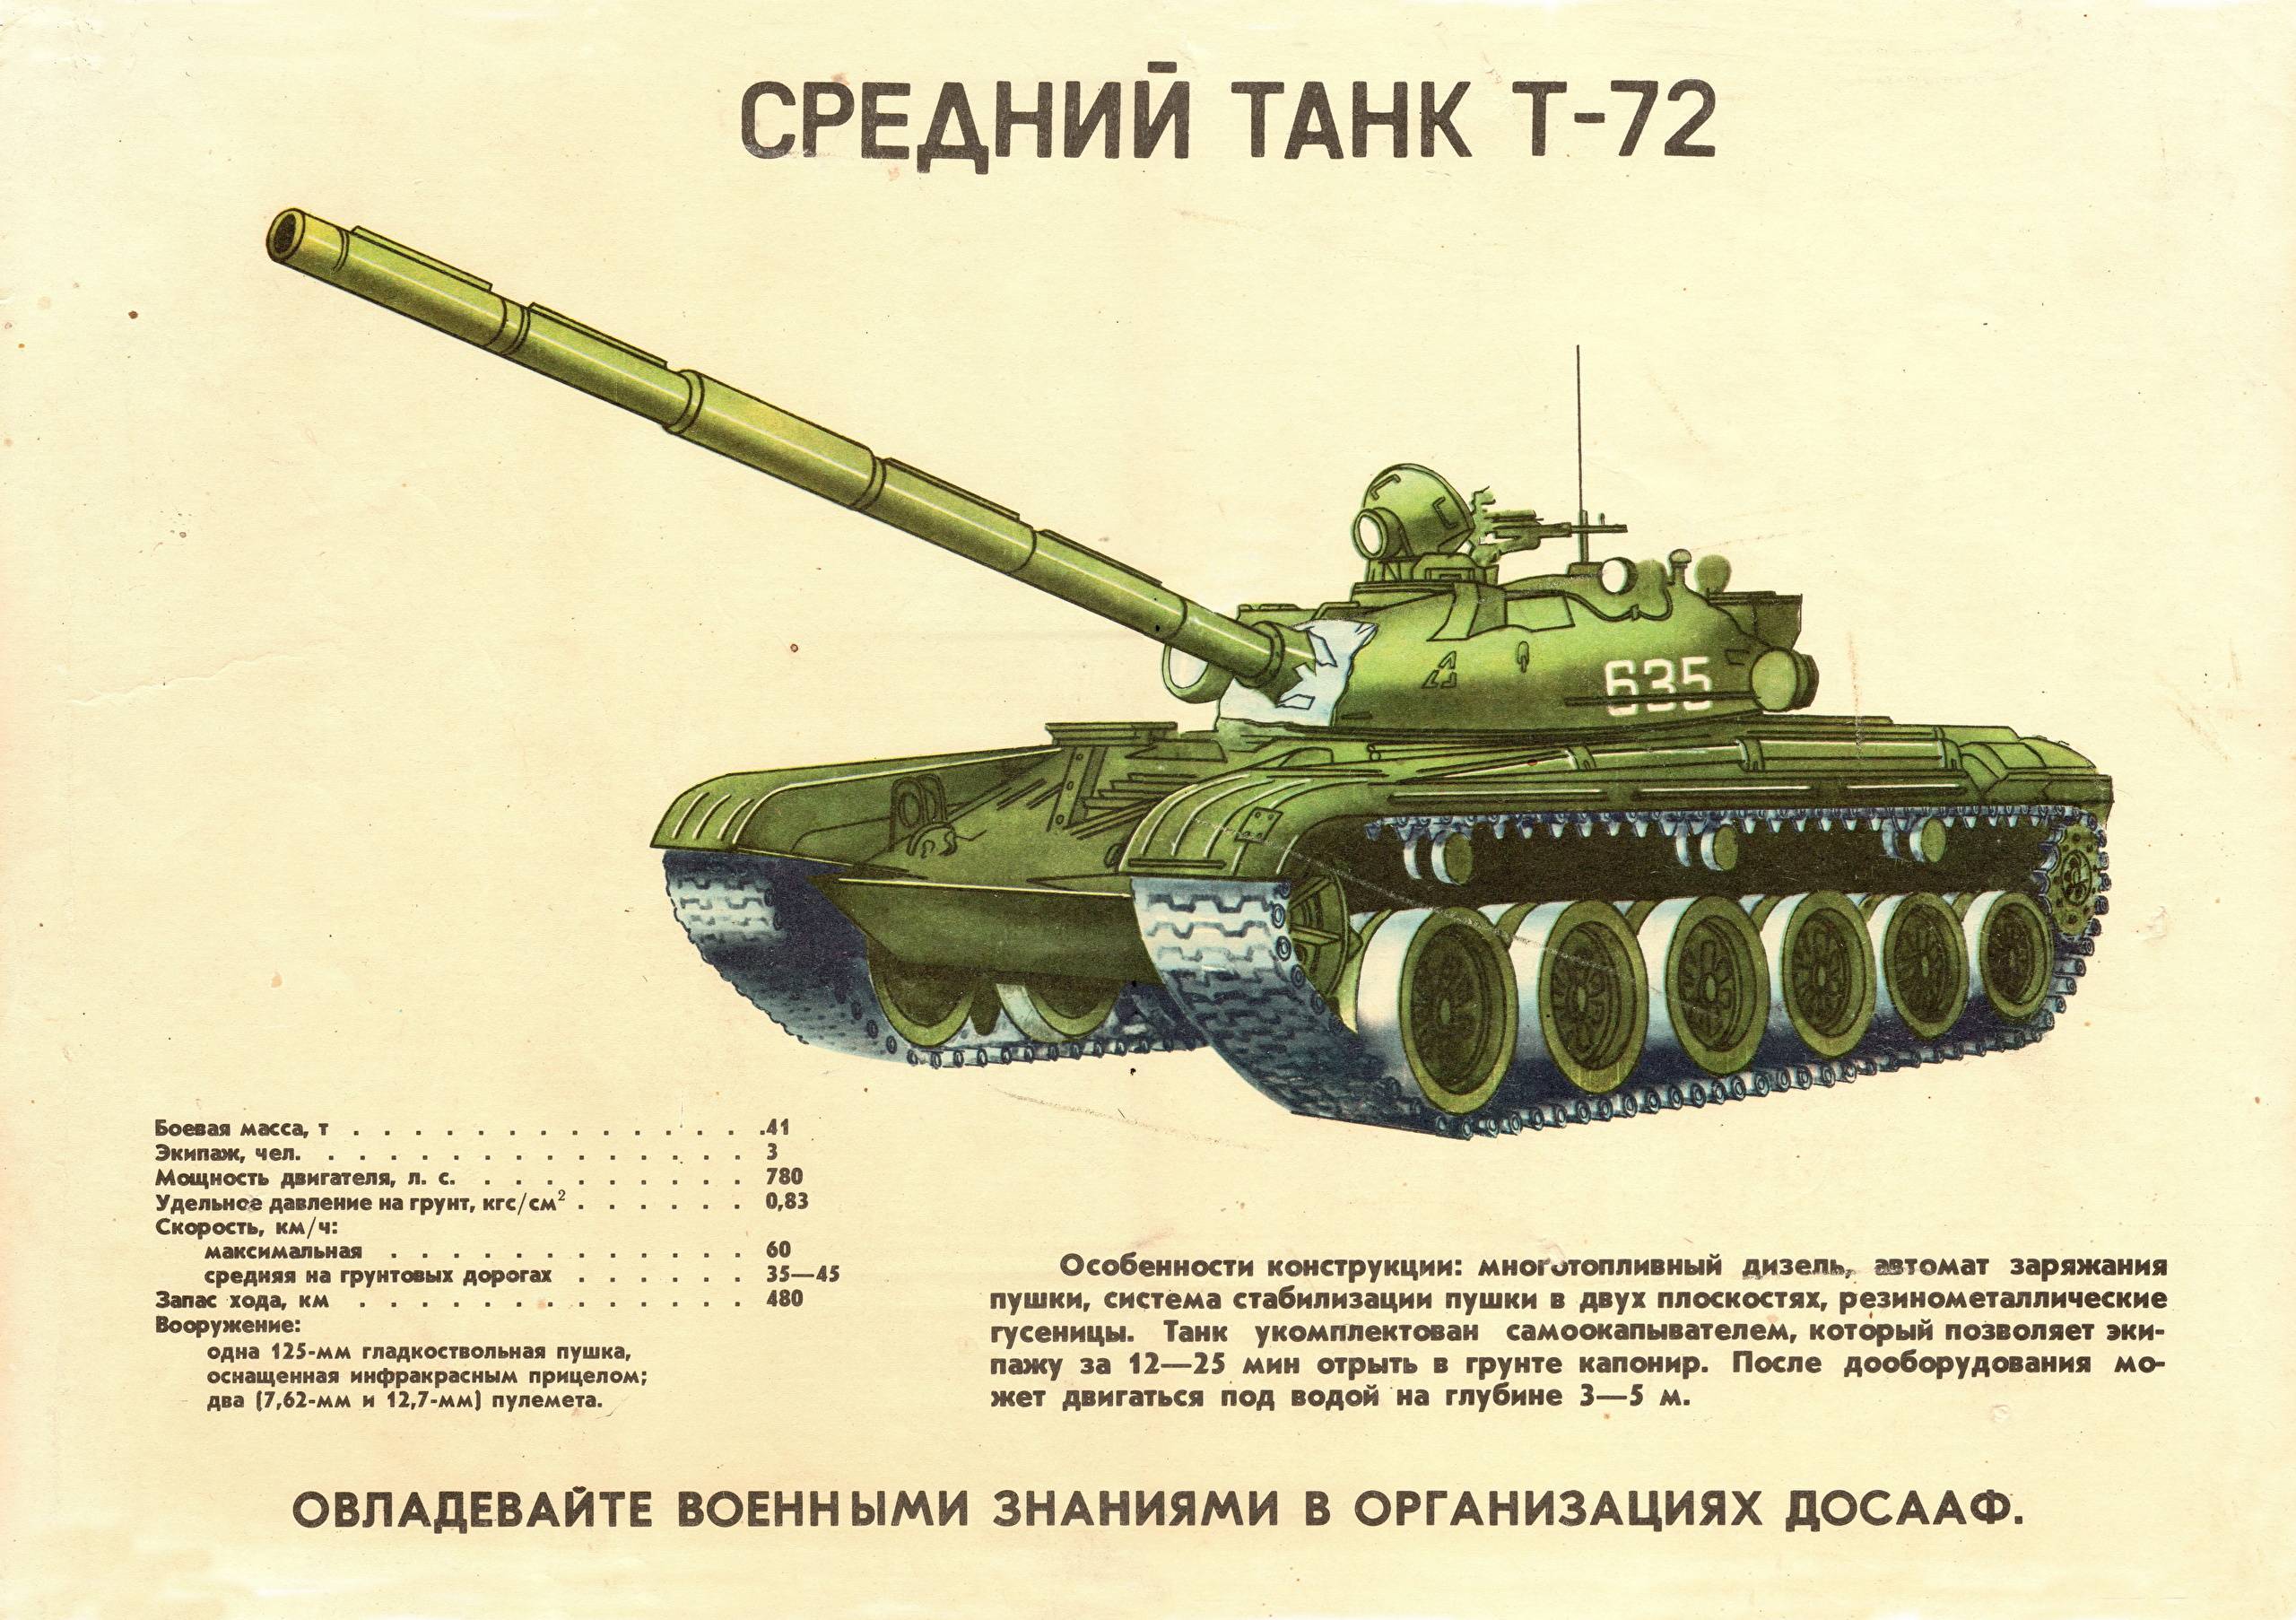 Т-70 танк: технические характеристики, фото, боевое применение